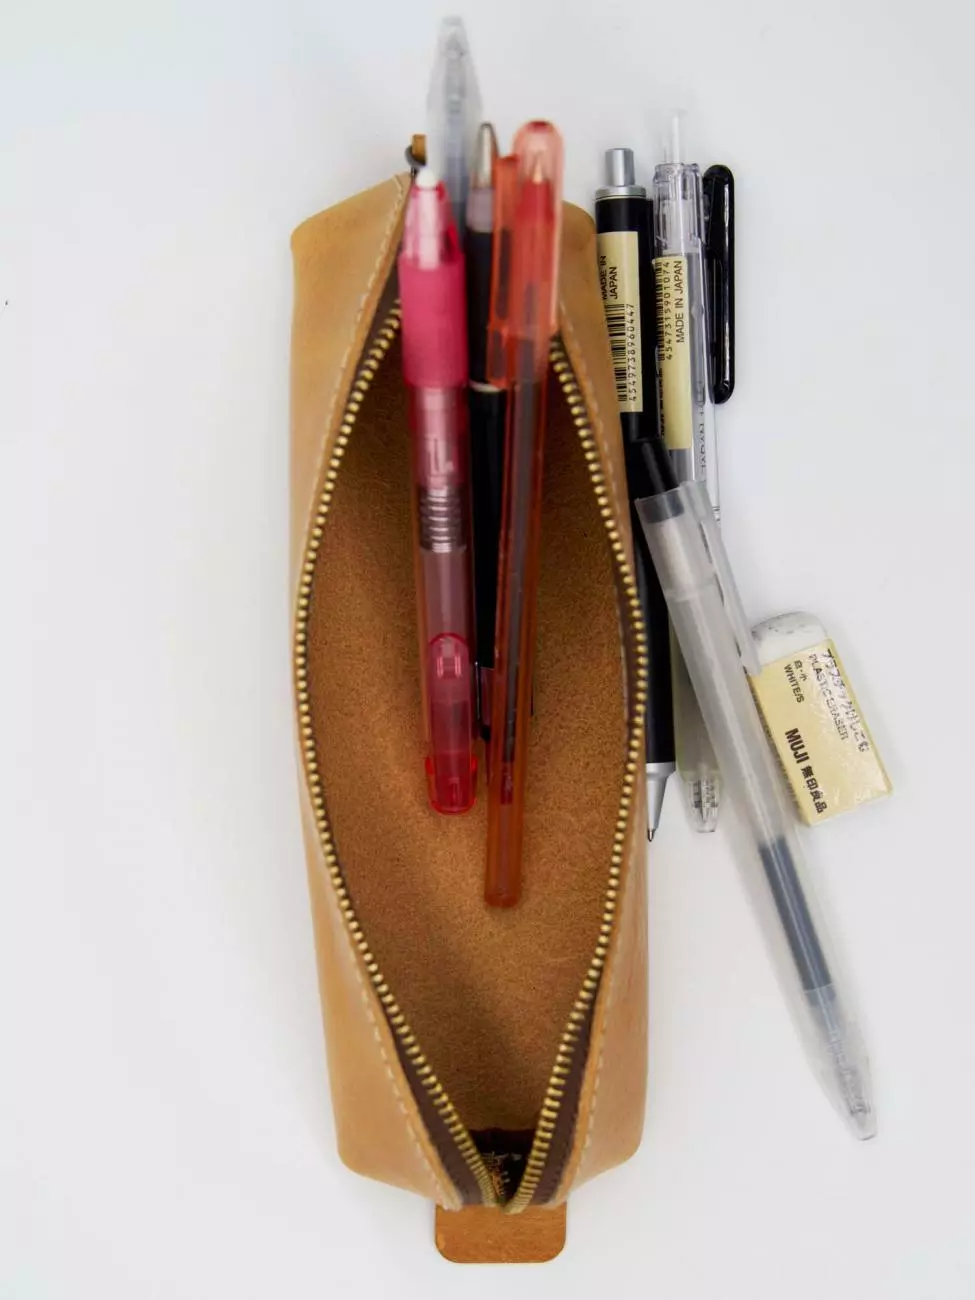 8 - Pencil case for pens